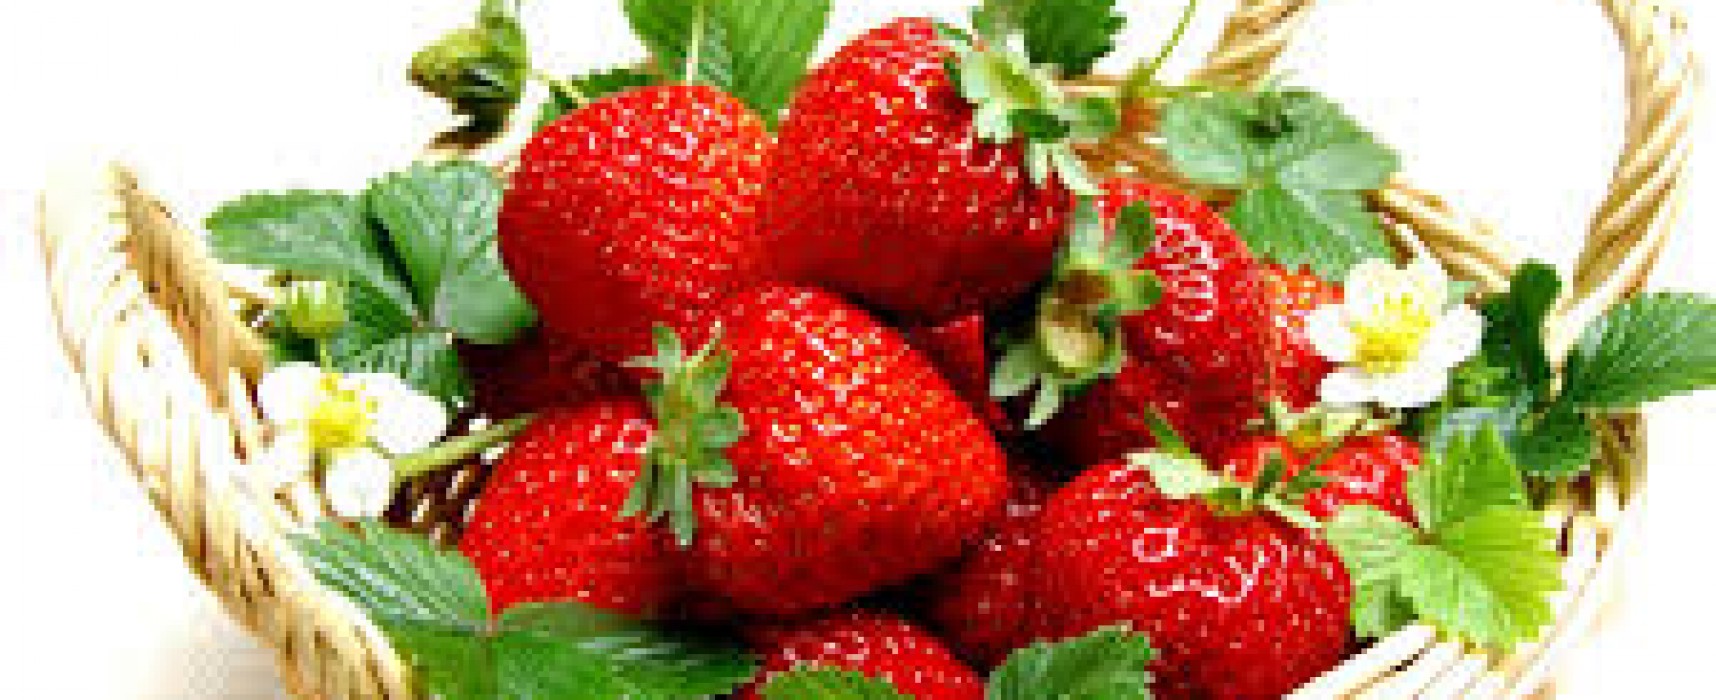 Strawberry Pleasures